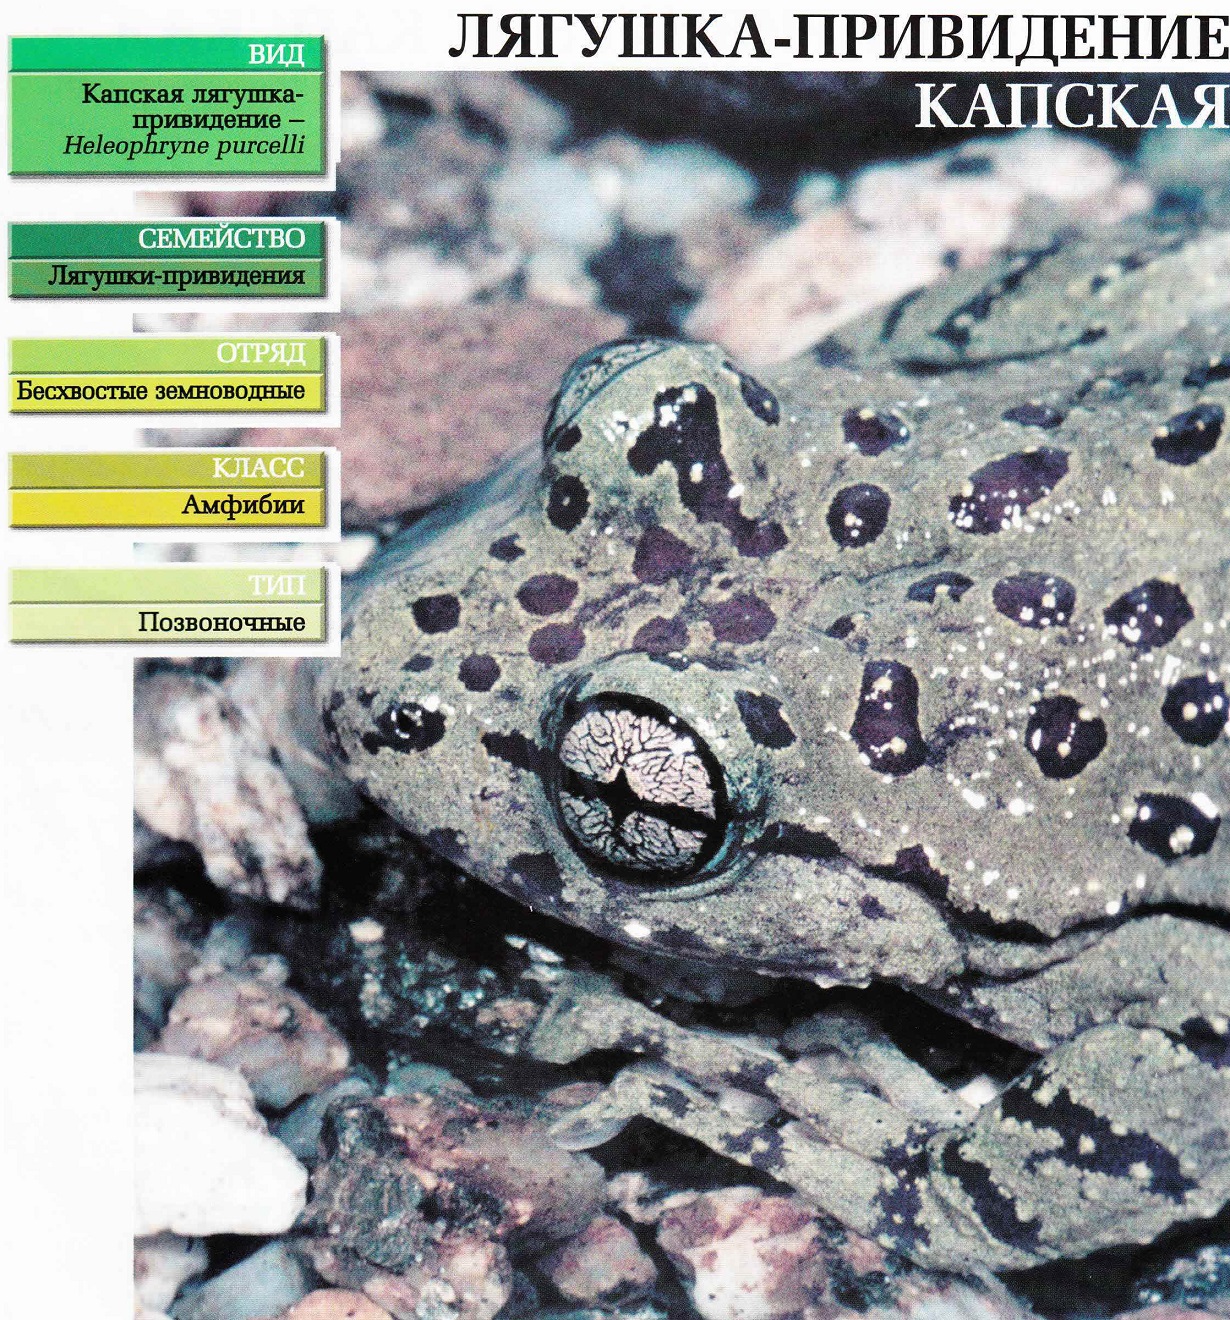 Систематика (научная классификация) лягушки-привидения капской. Heleophryne purcelli.